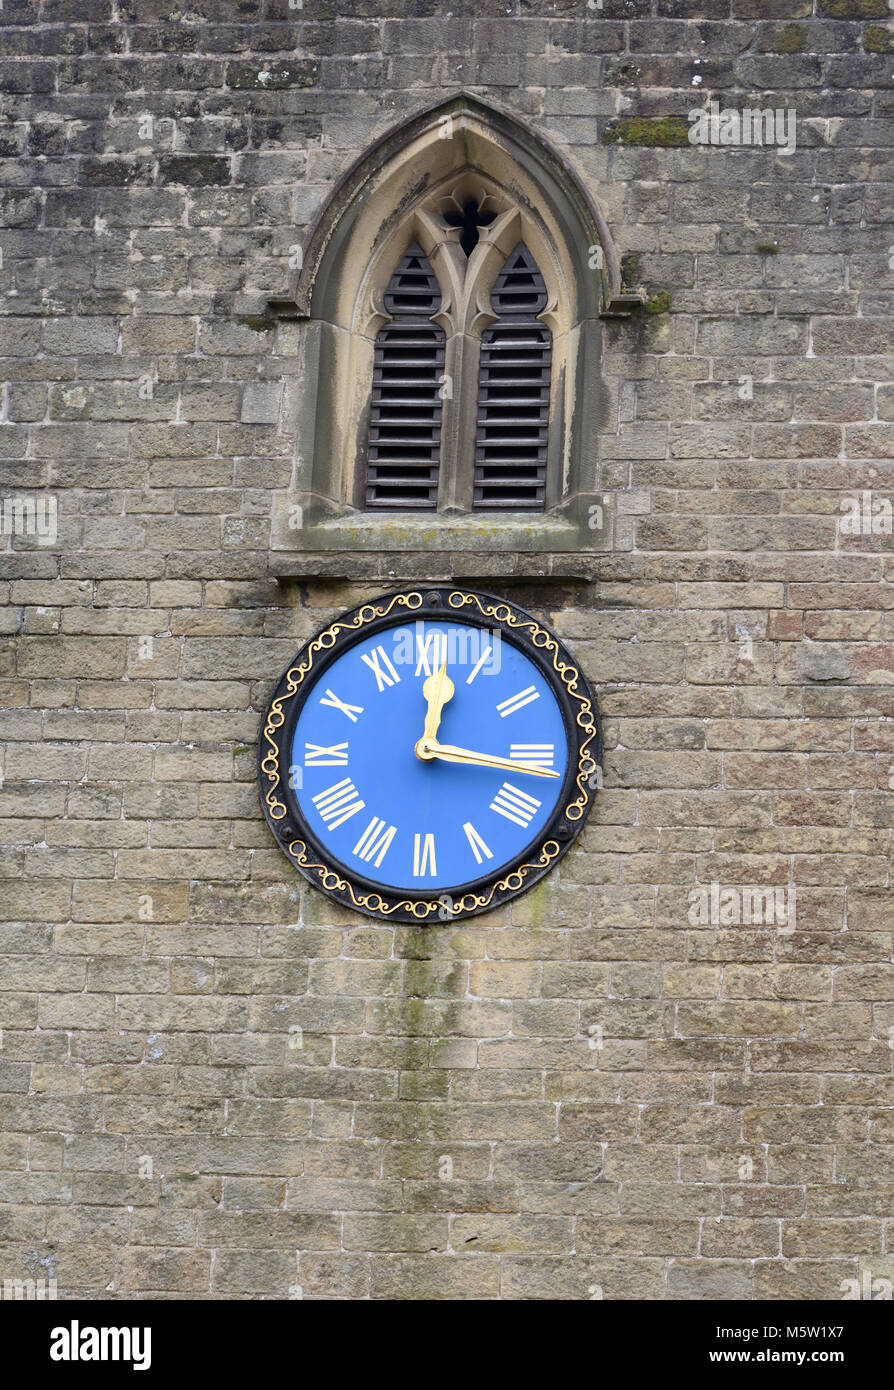 Das blaue Zifferblatt in den steinernen Turm von St Martin's Church Set zeigt Viertel nach zwölf. Stoney Middleton, Derbyshire, England, UK. Stockfoto